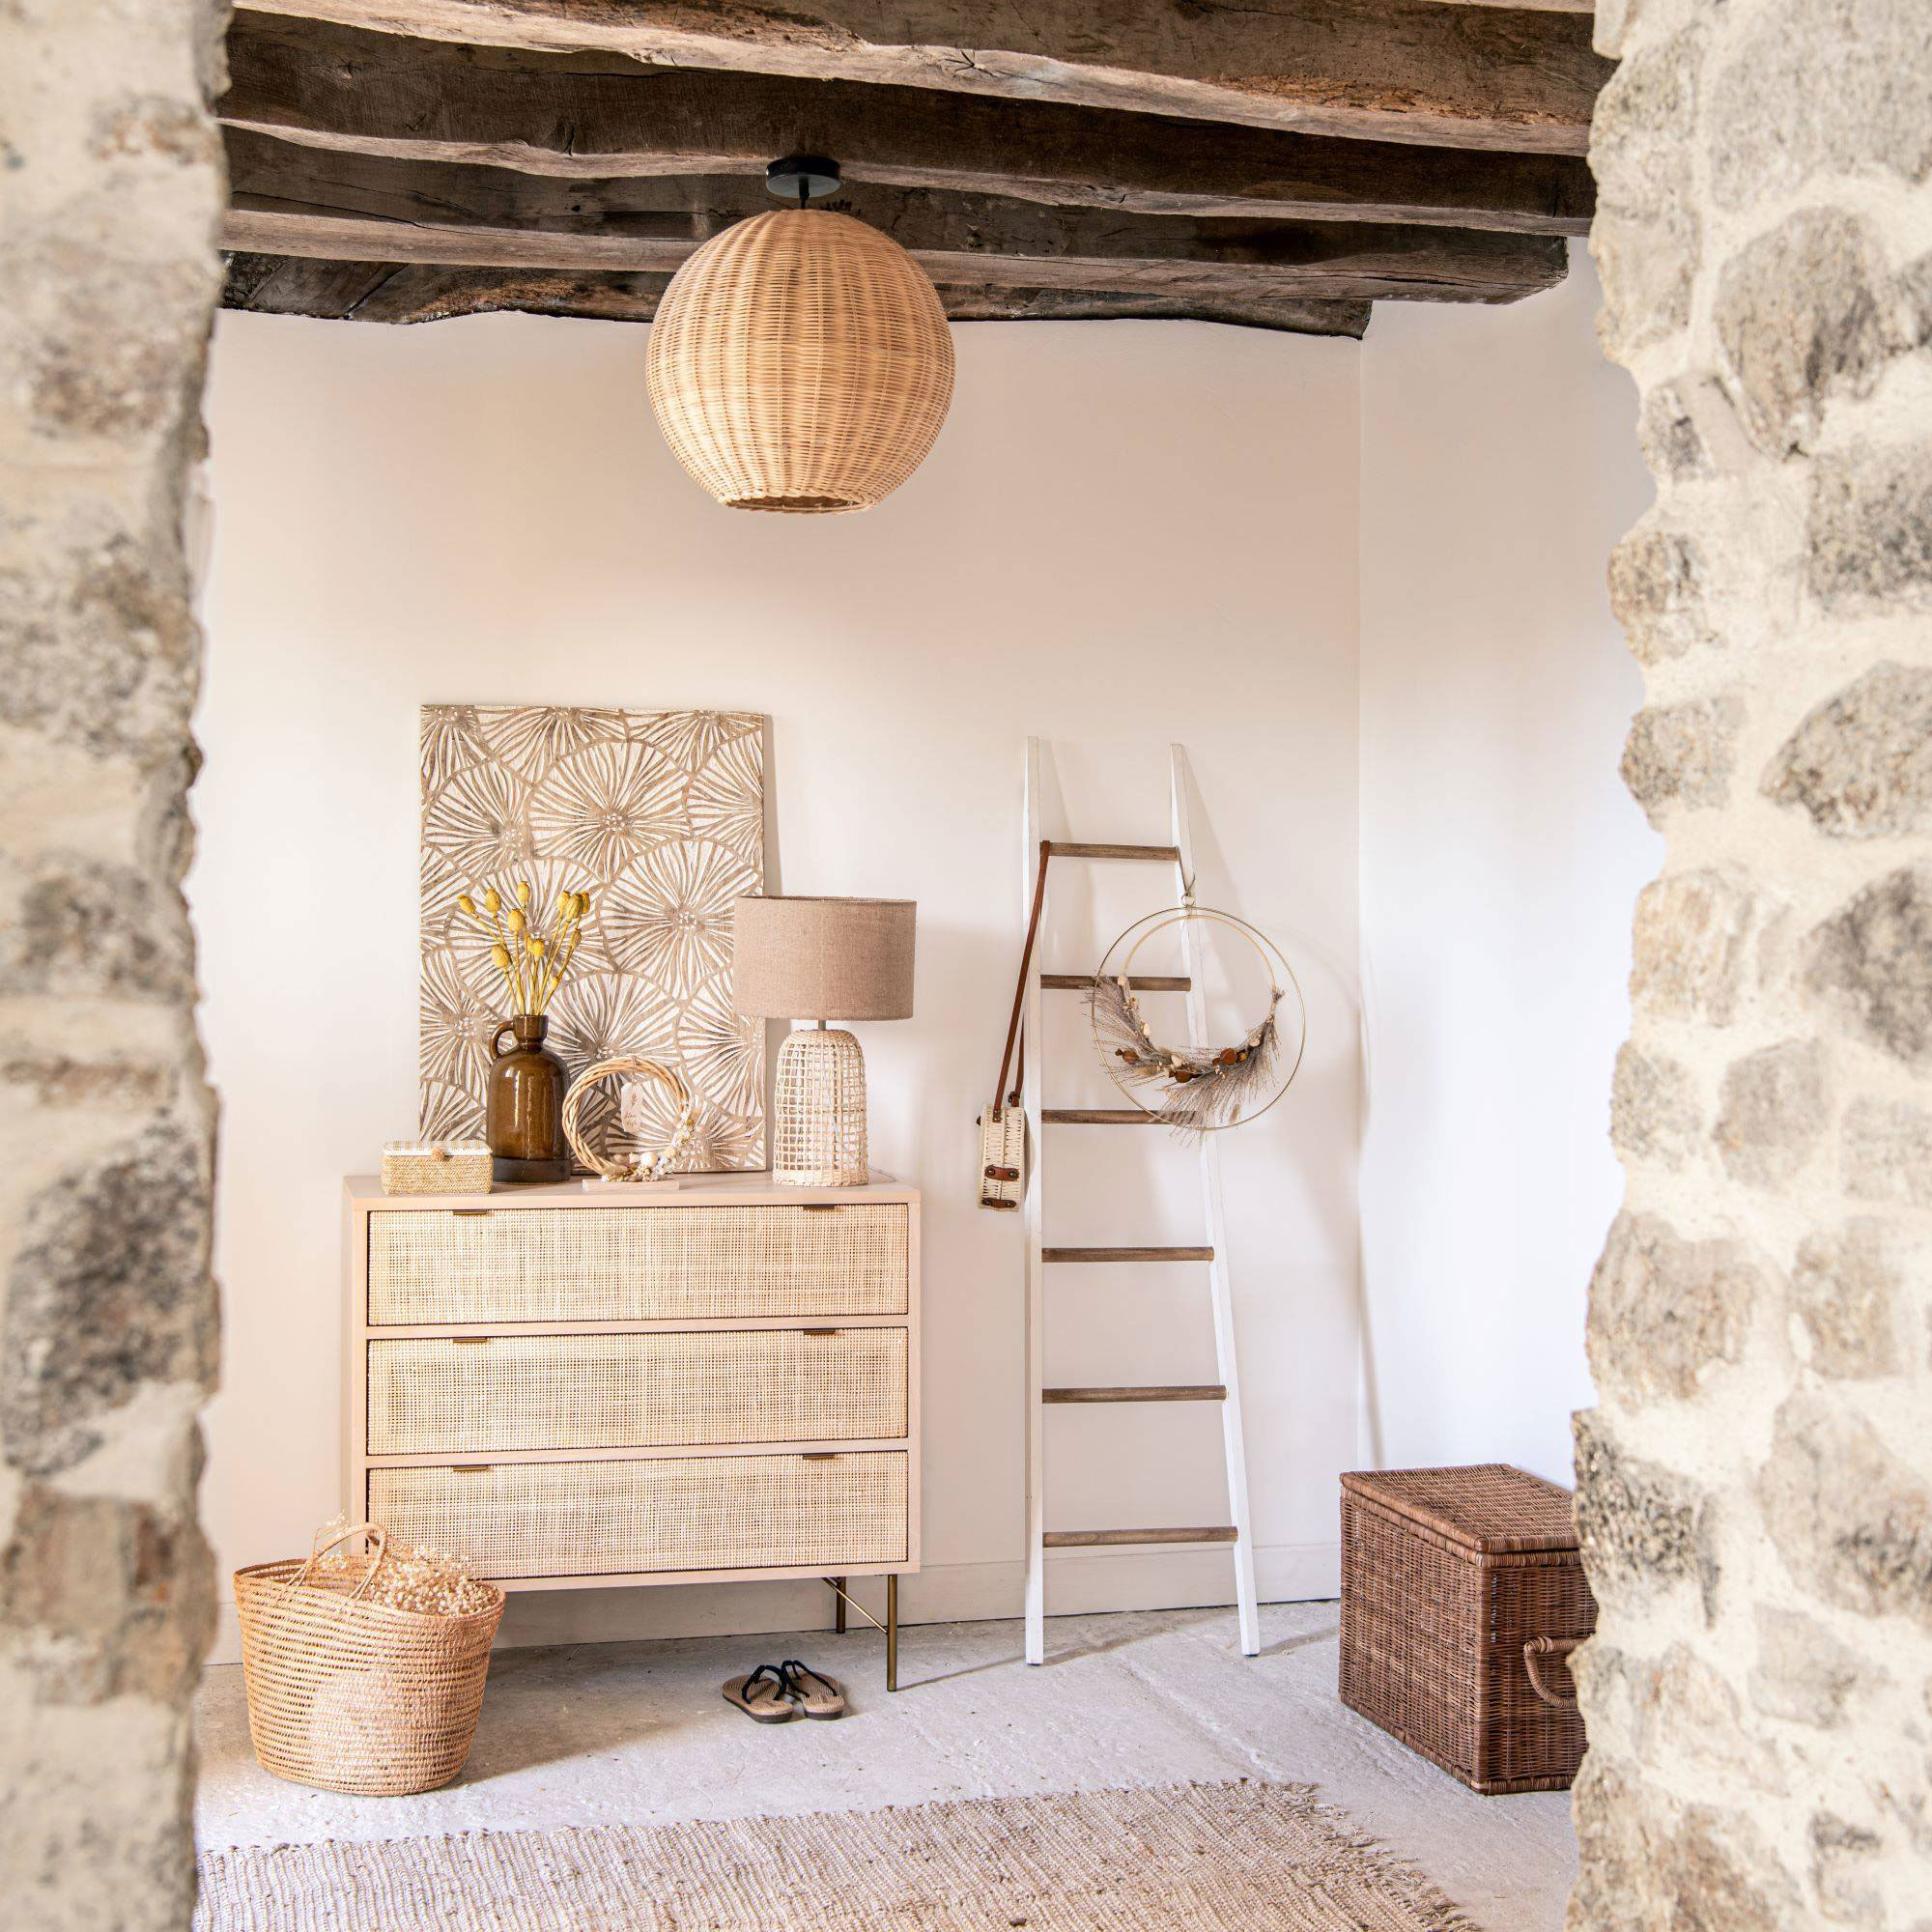 Ещё больше летнего вдохновения: тёплая коллекция Formentera от Maisons du Monde